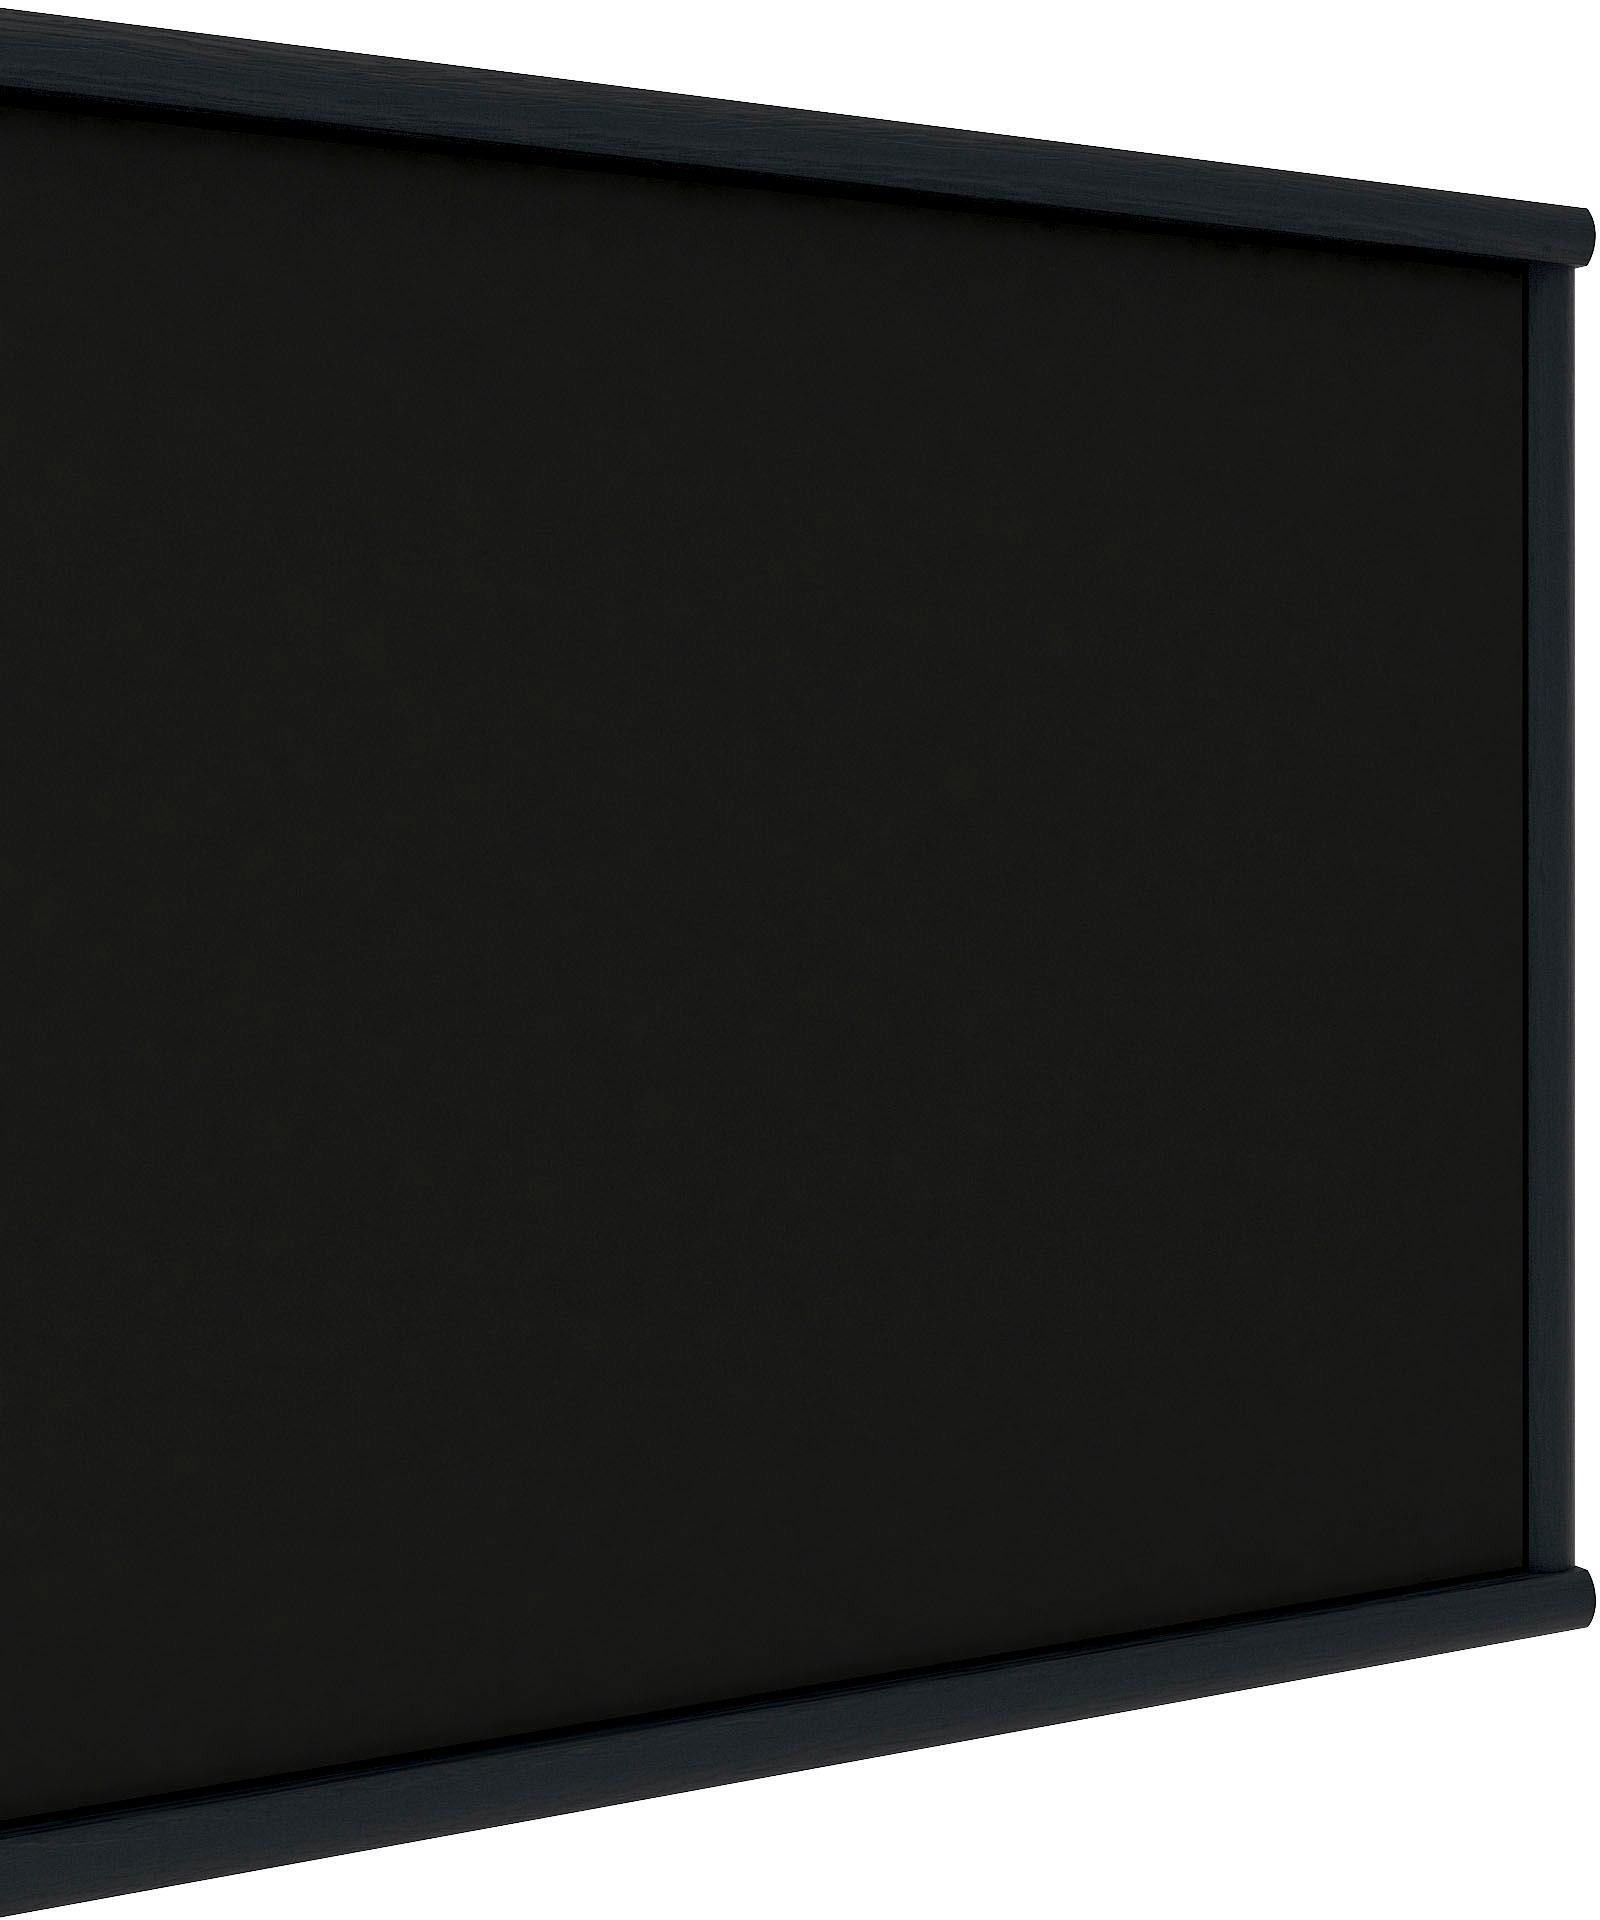 Hammel Furniture TV-Board »Mistral Fernsehschrank, Medienmöbel, Hängend«, mit Tür mit Akustikstoff, Kabeldurchführung, Lowboard, B: 108 cm